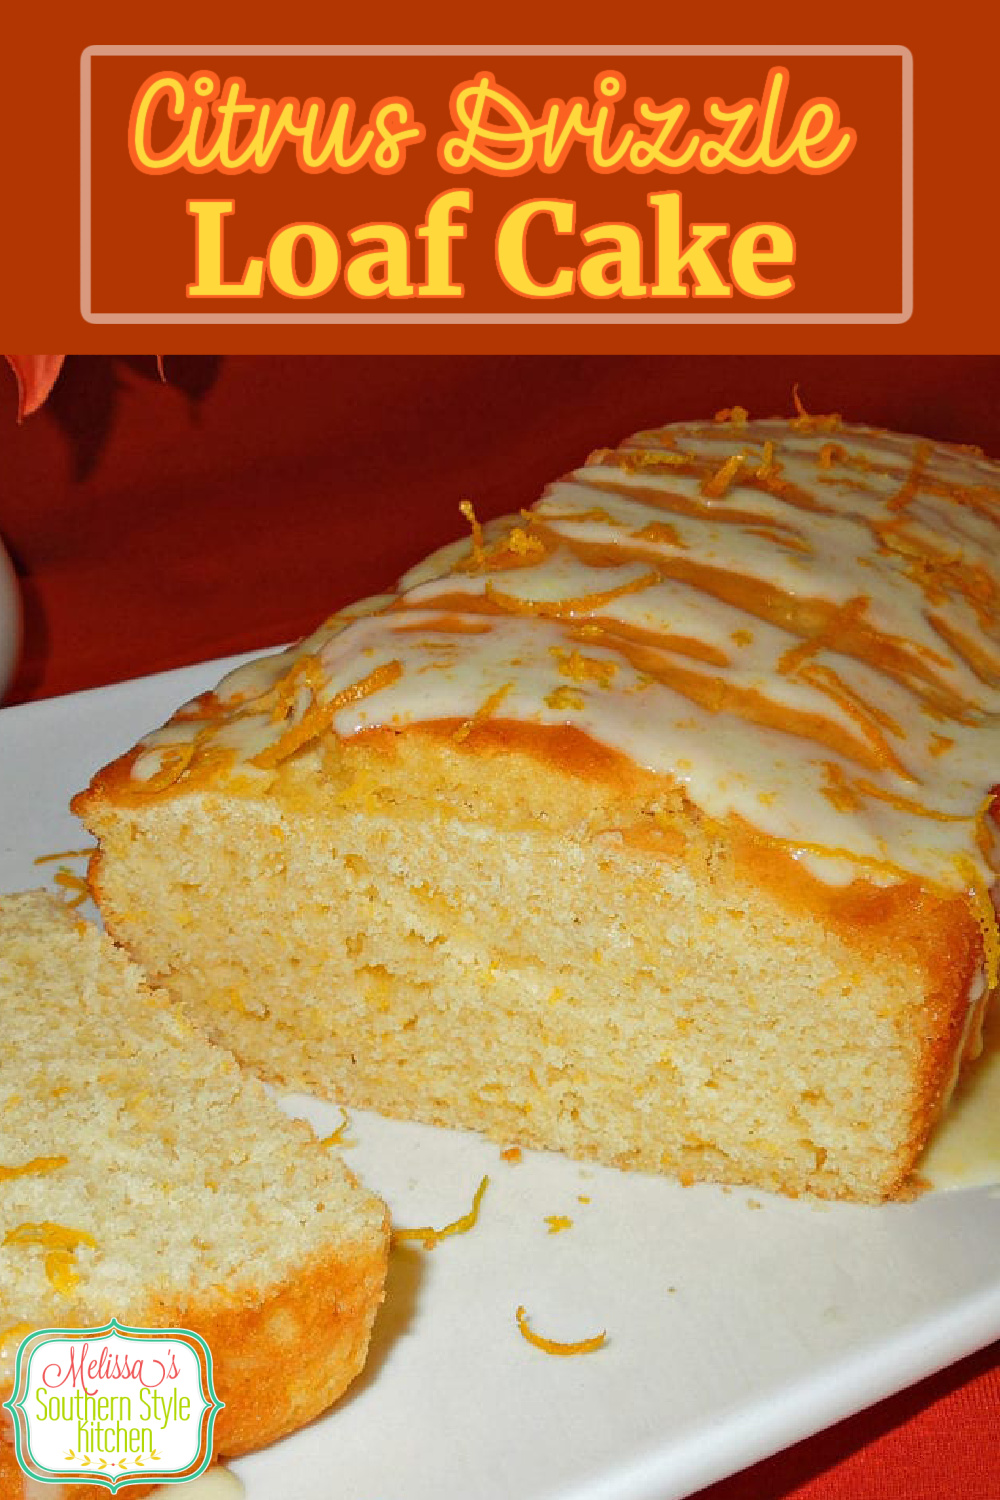 Enjoy this Citrus Drizzle Loaf Cake for breakfast, brunch, tea time or dessert #loafcakes #citrus #orangecake #loafcakerecipes #orange #southernrecipes #desserts #brunch #holidaybrunch #Southerncakerecipes